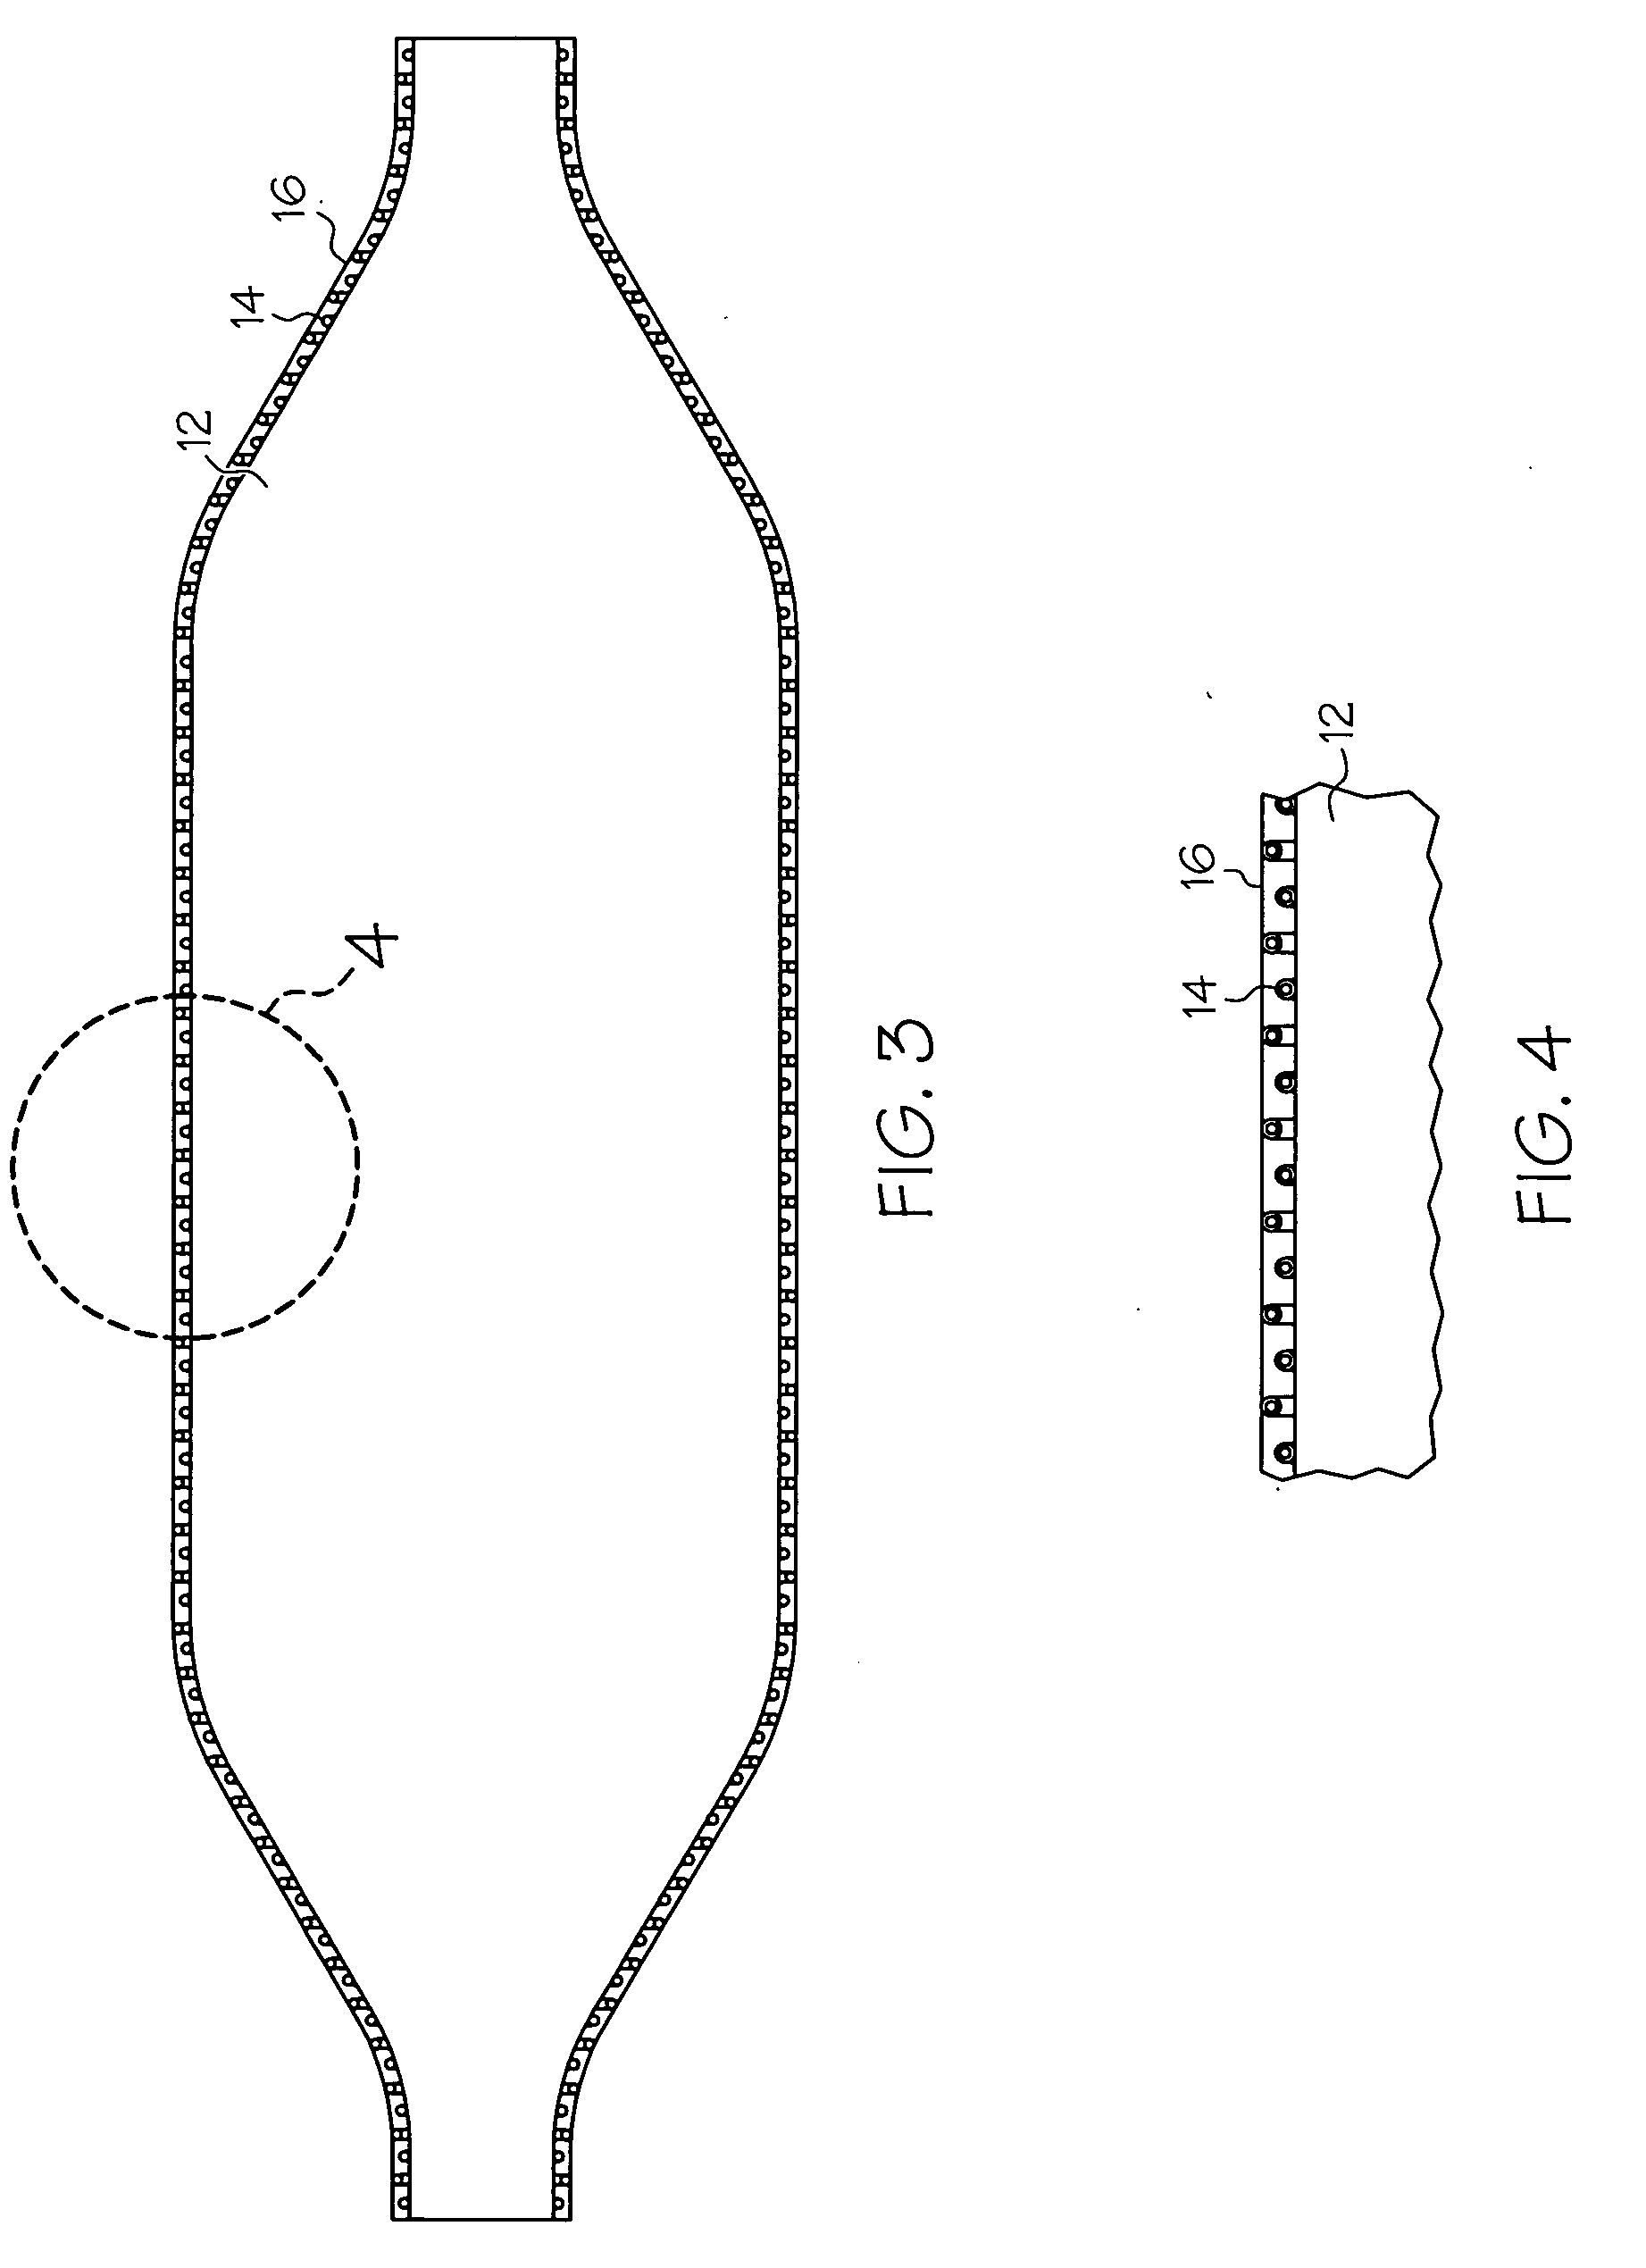 Artificial silk reinforcement of PTCA balloon